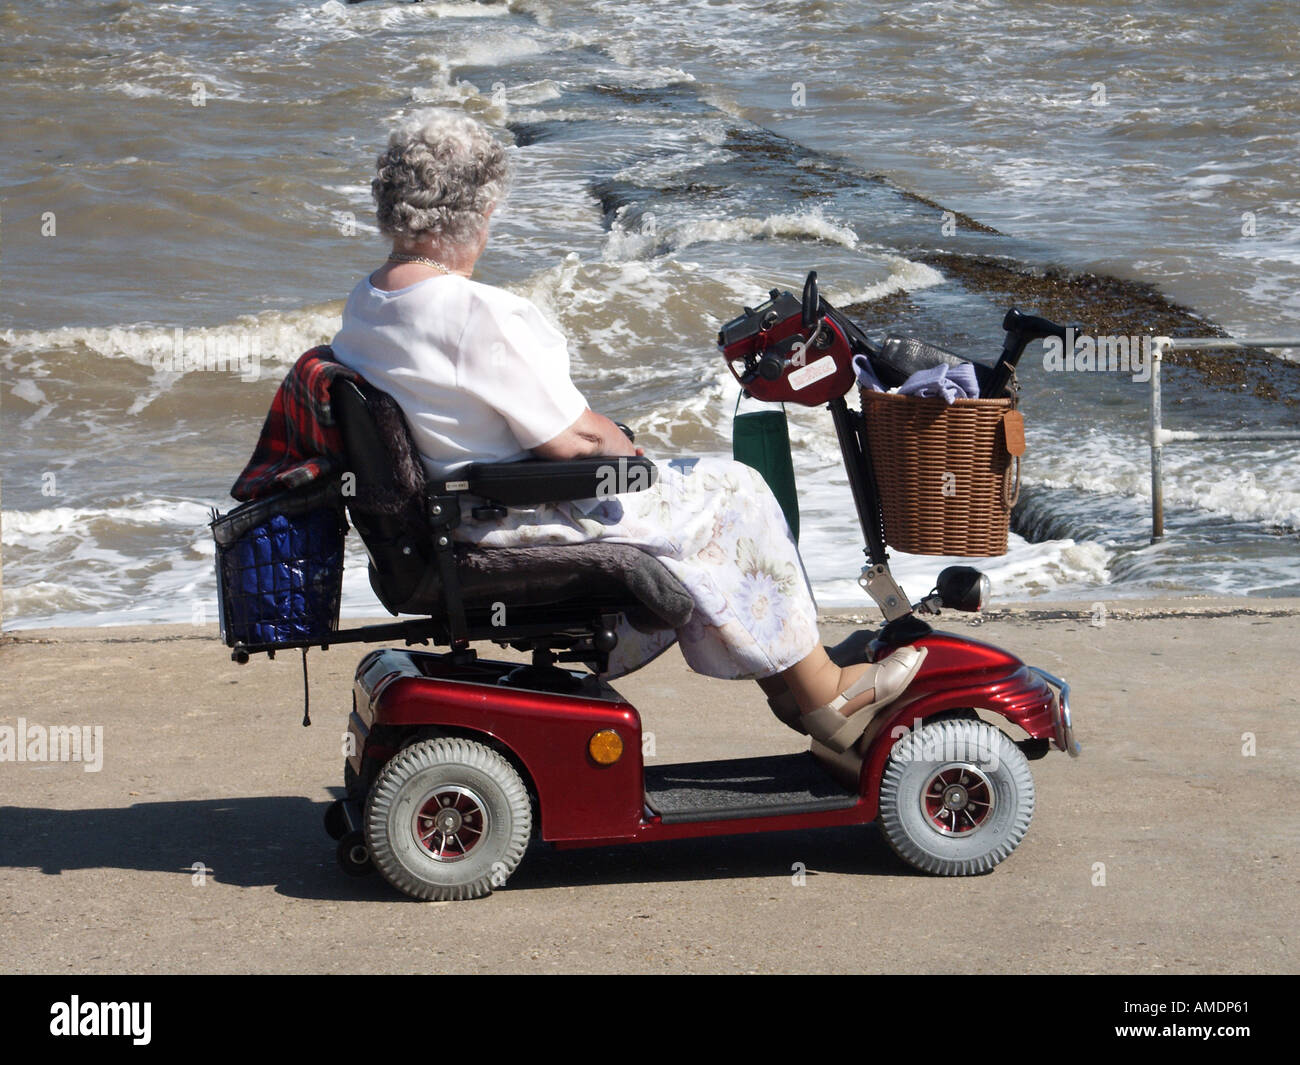 Front de mer promenade de mur de mer femme mature conduisant sur scooter d'invalidité motorisée regardant à marée haute mer rugueuse Walton sur le Naze Essex Angleterre Royaume-Uni Banque D'Images